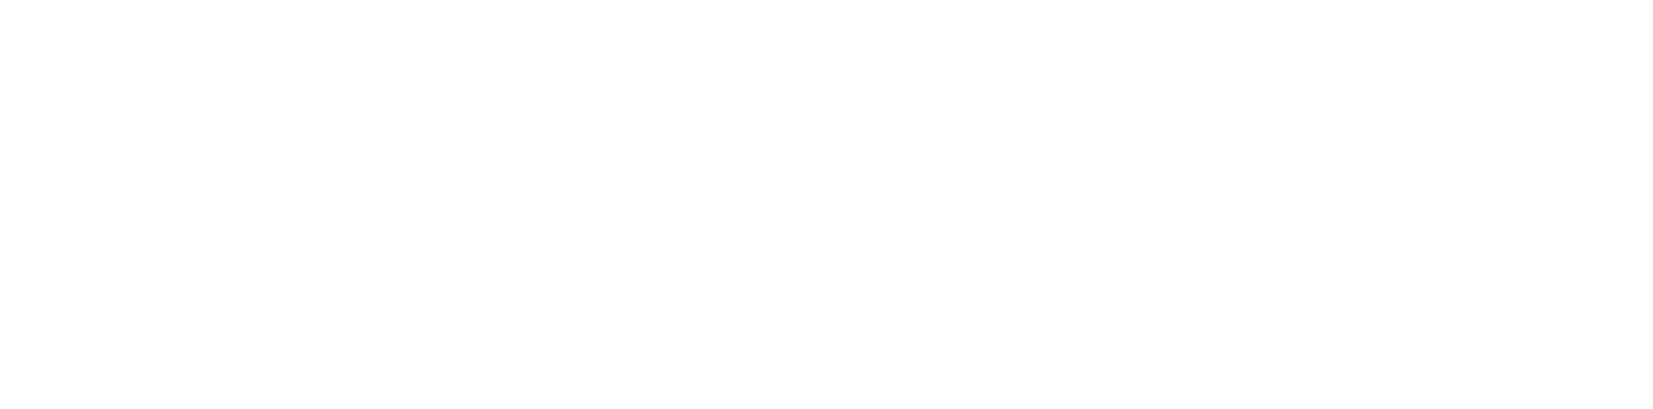 Simplicity by hayden homes logo